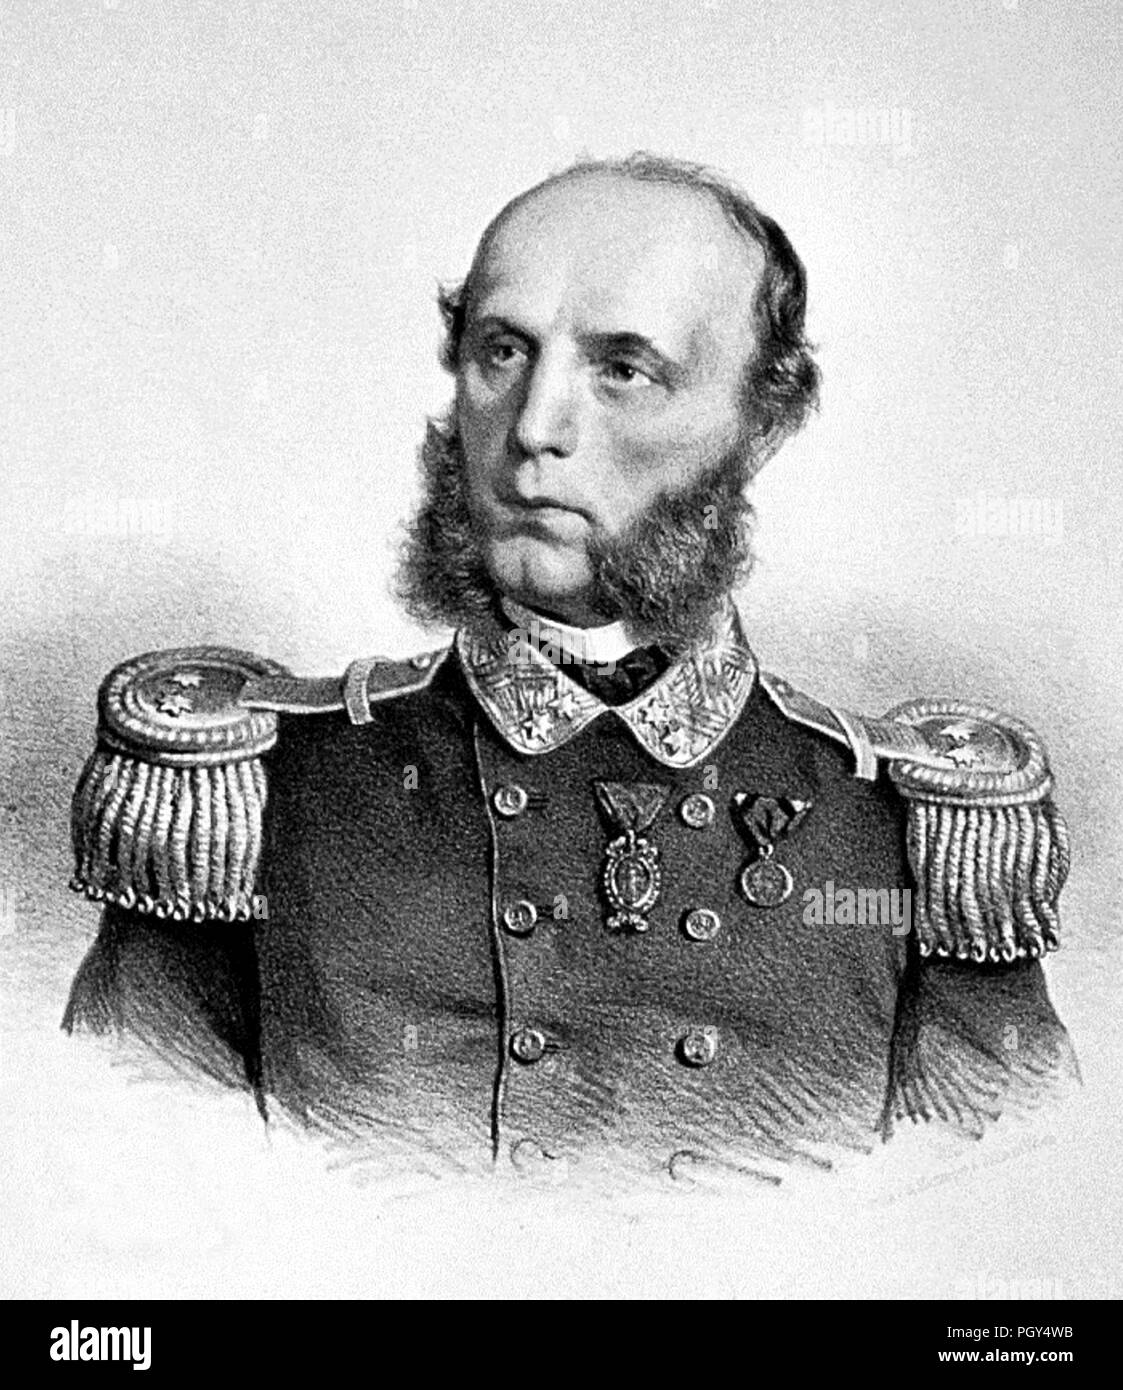 Battaglia di Lissa -( ora isola di Vis - Croazia ) 20 luglio 1866 - L'Ammiraglio Tegetthoff Foto Stock